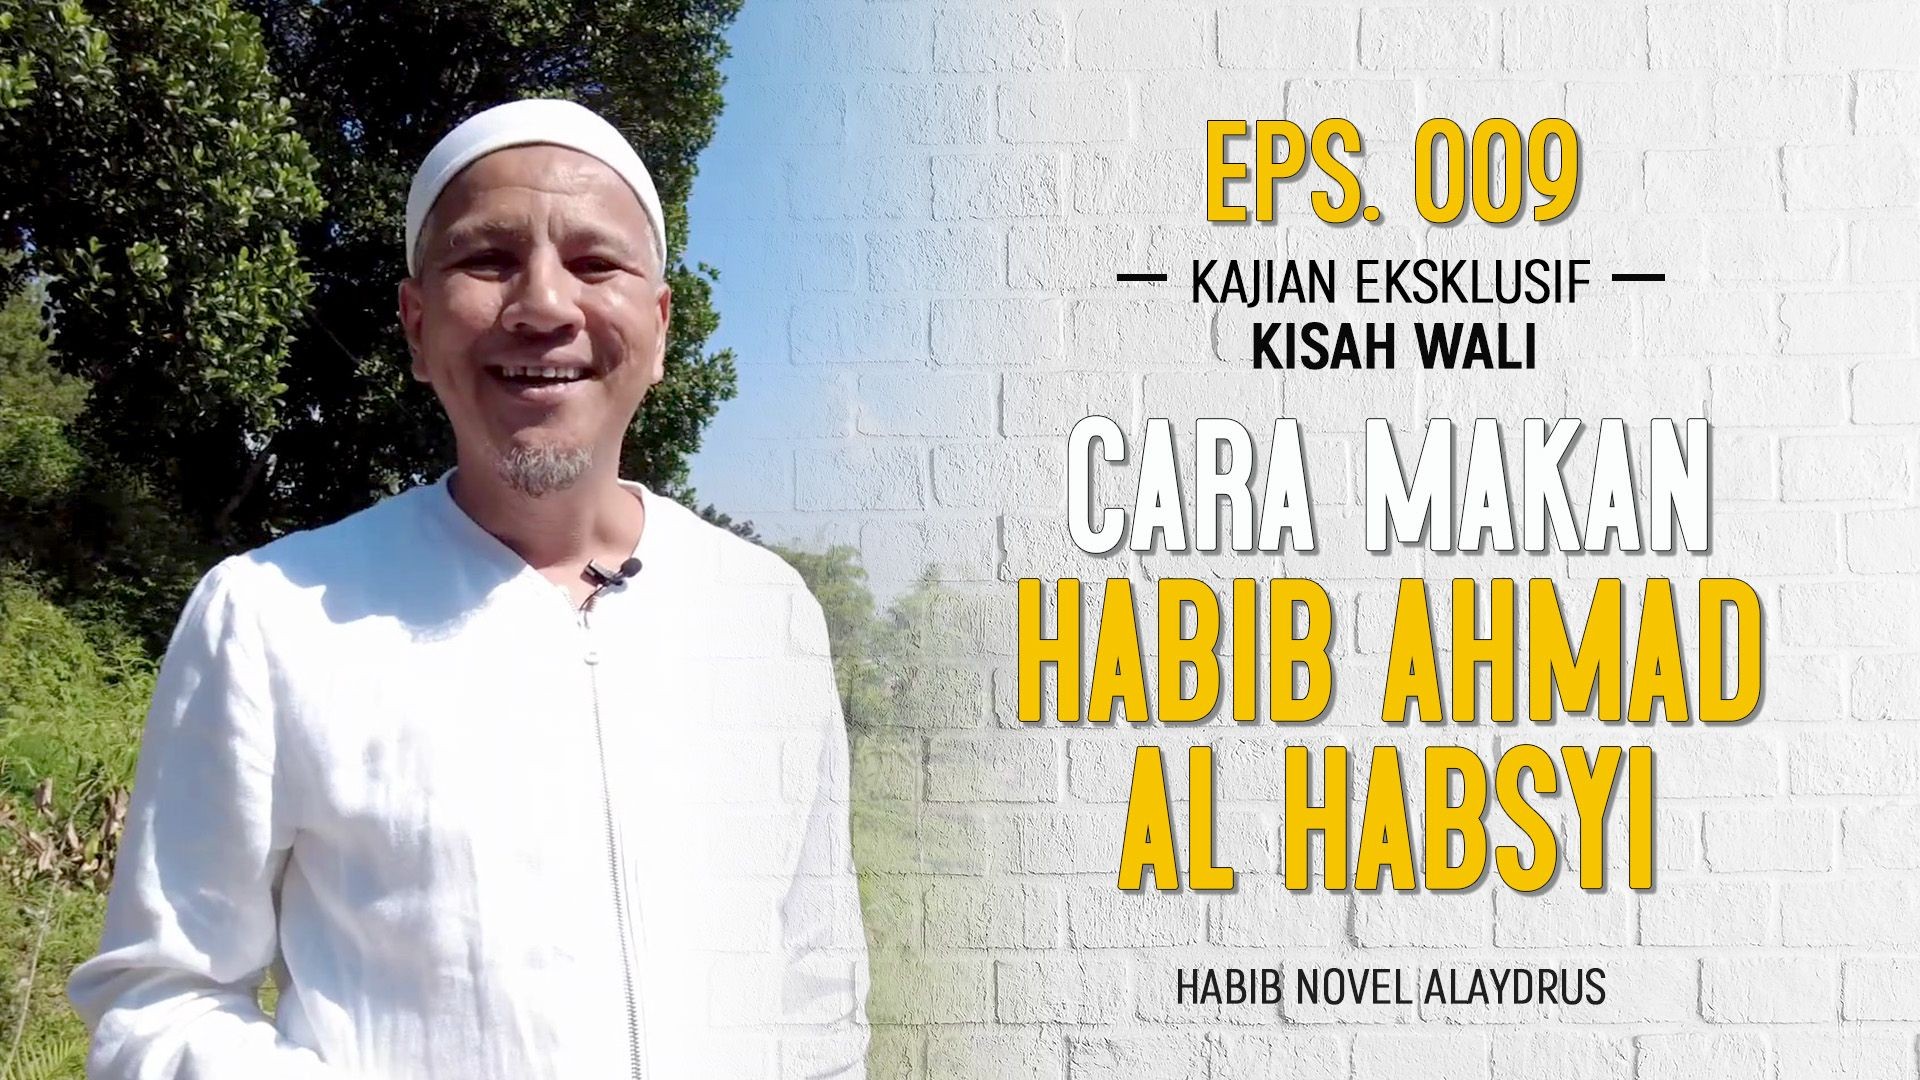 CARA MAKAN HABIB AHMAD AL HABSYI